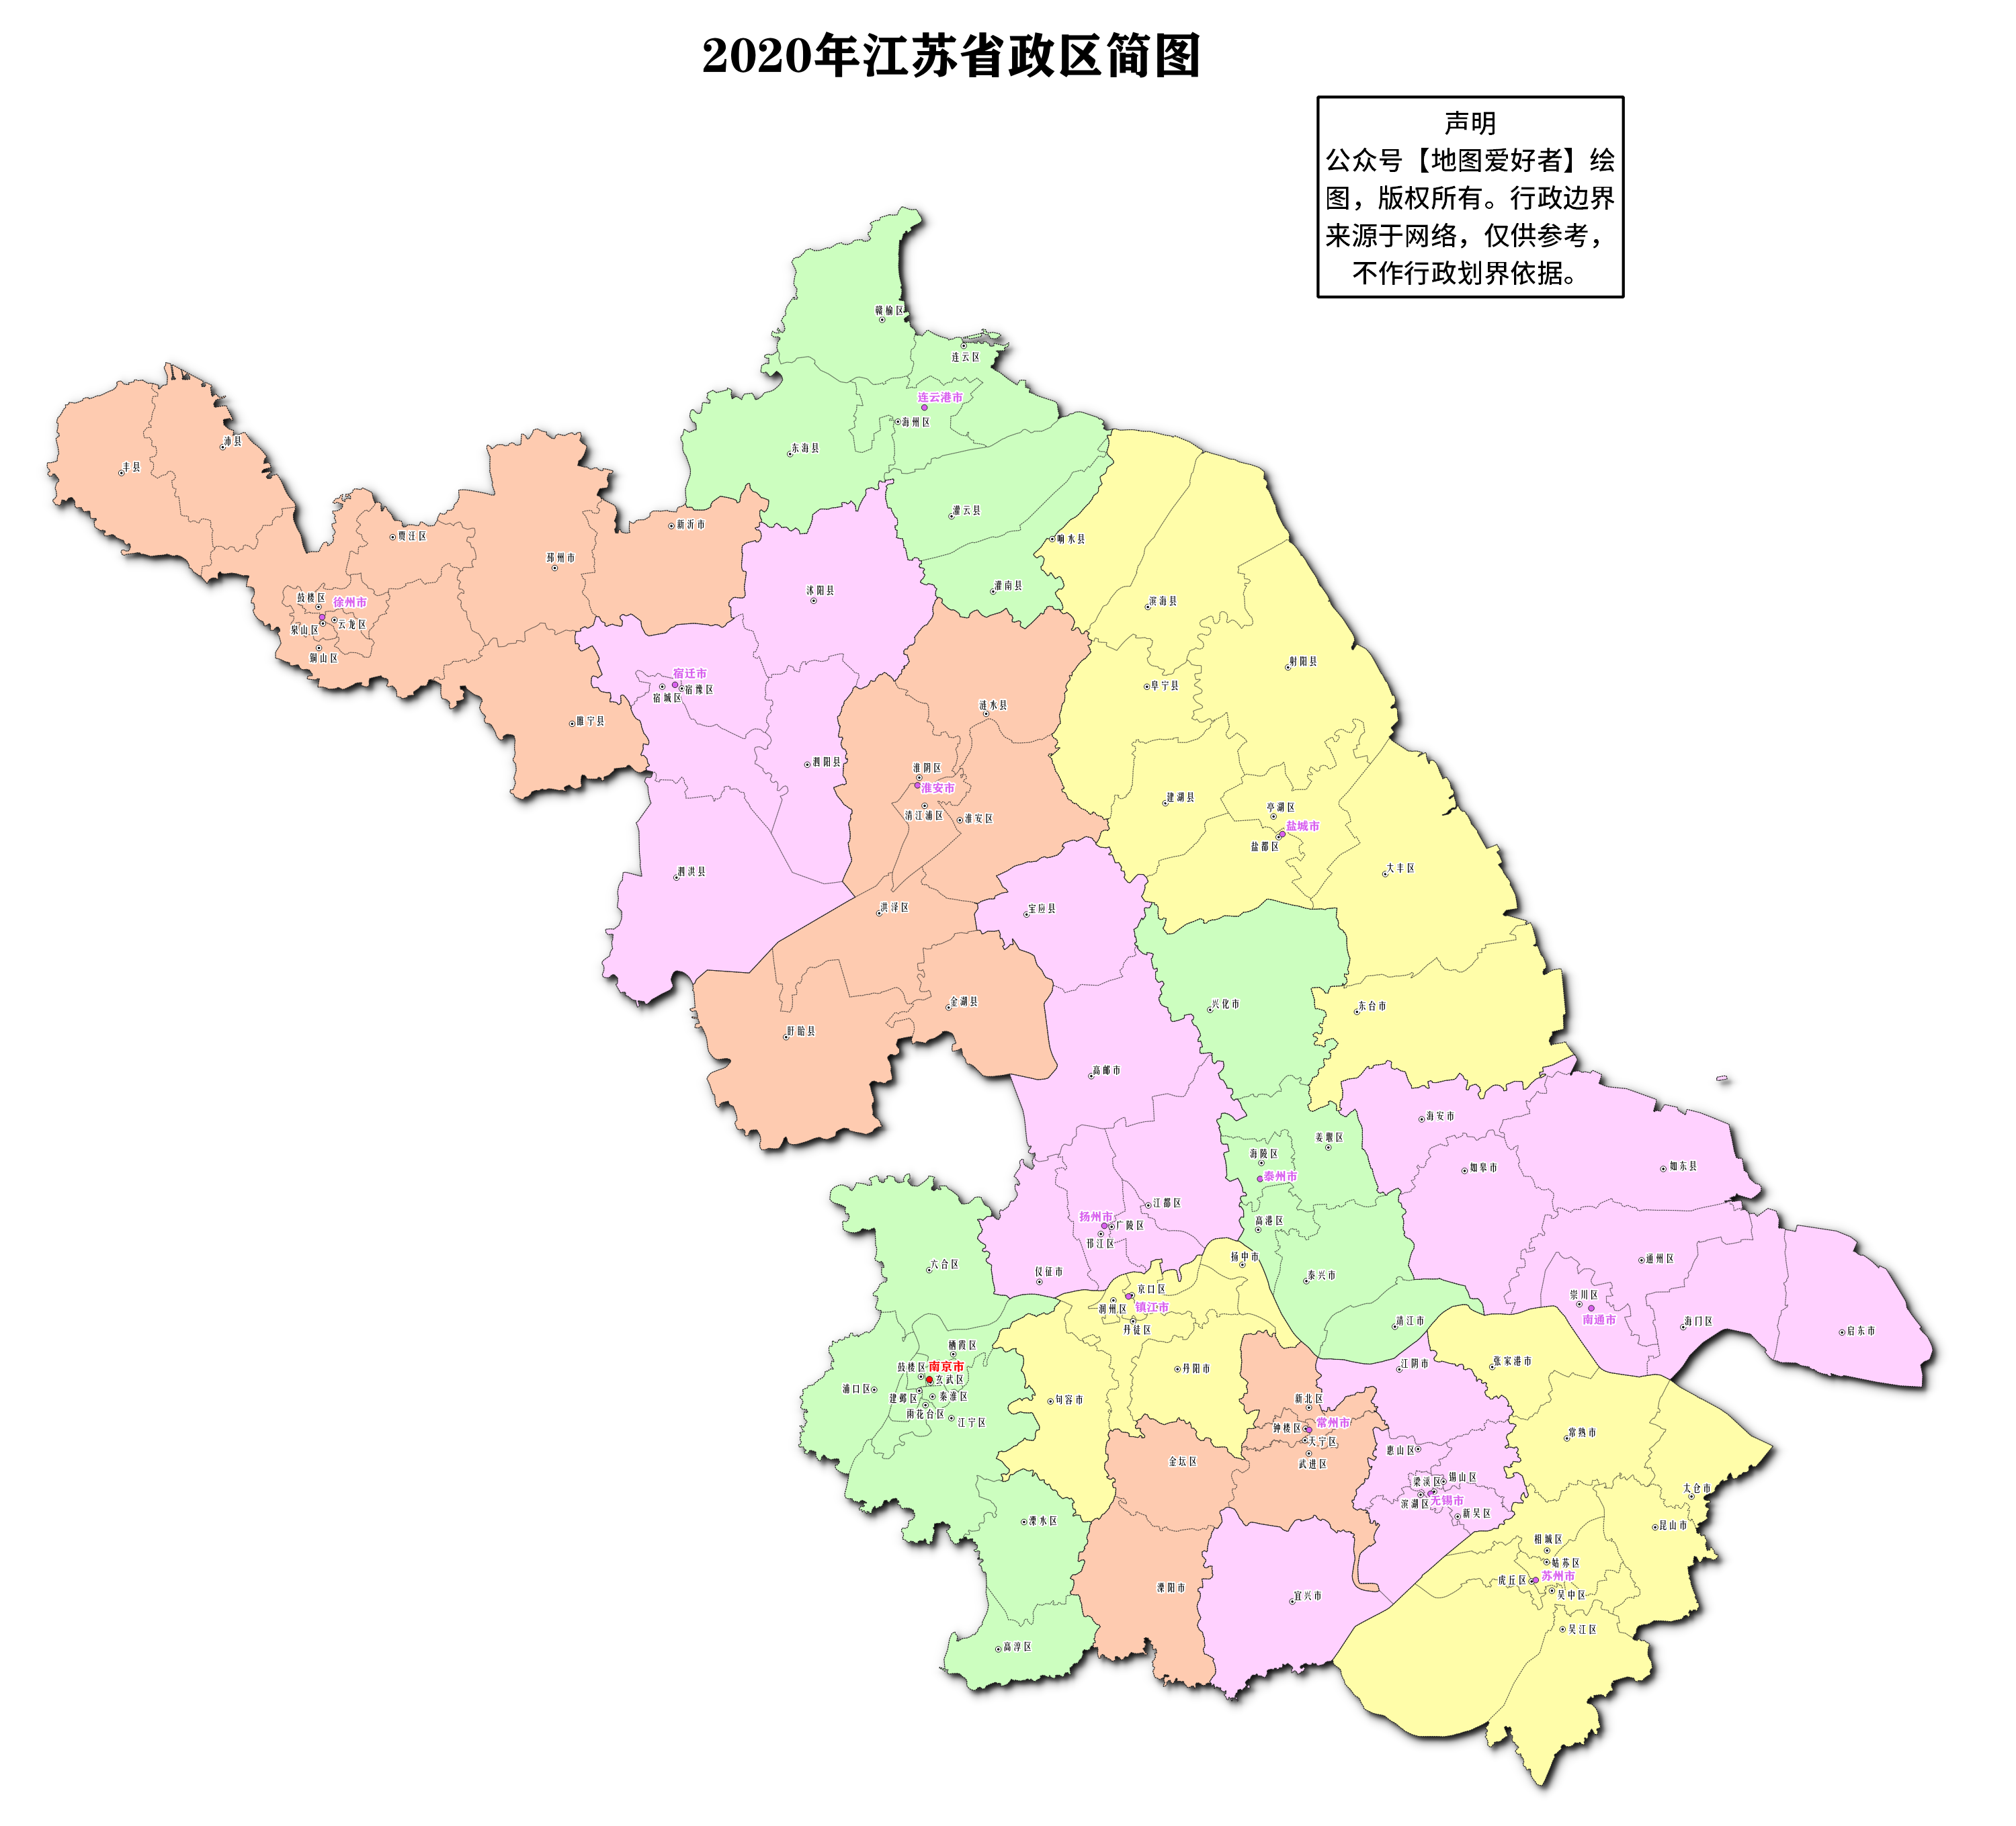 开封市行政区域划分图-图库-五毛网